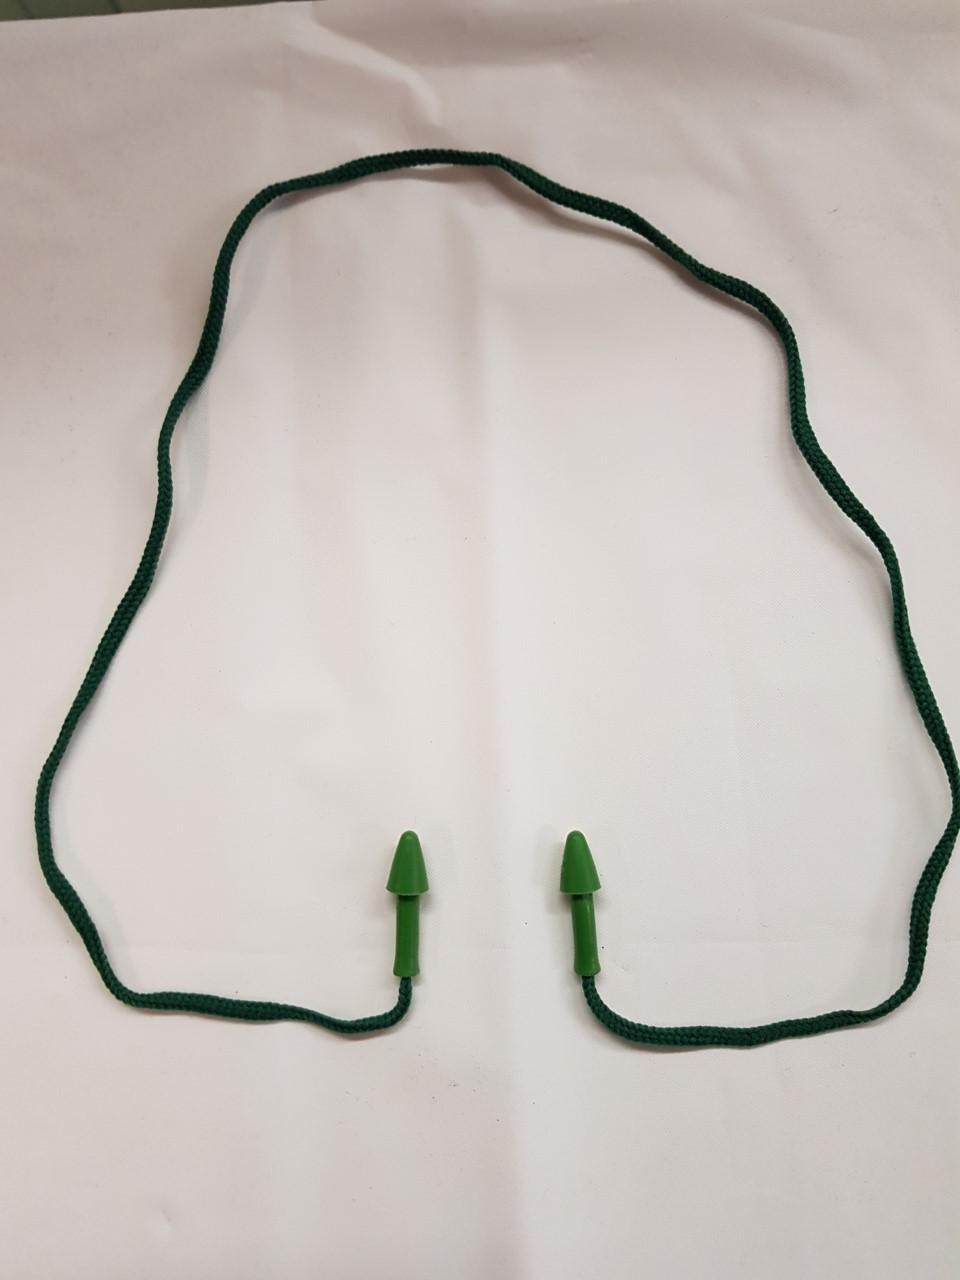 Conicfit - Conicfit oordoppen groen met touw